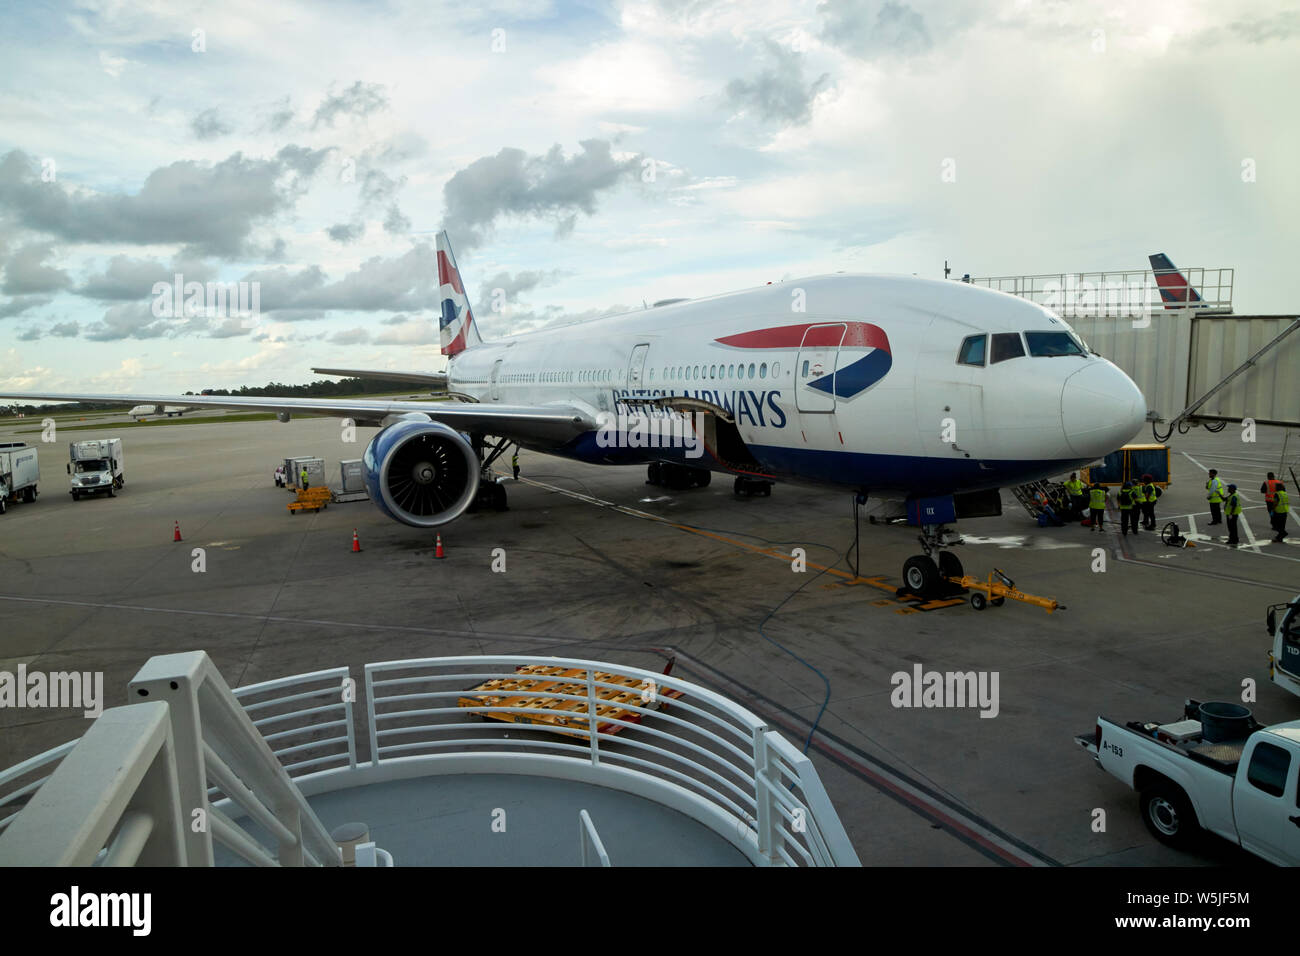 British Airways Boeing 777 G-viix Luftseite auf Stand auf der Internationalen Flughafen Orlando MCO Terminal florida usa Vereinigte Staaten von Amerika Stockfoto